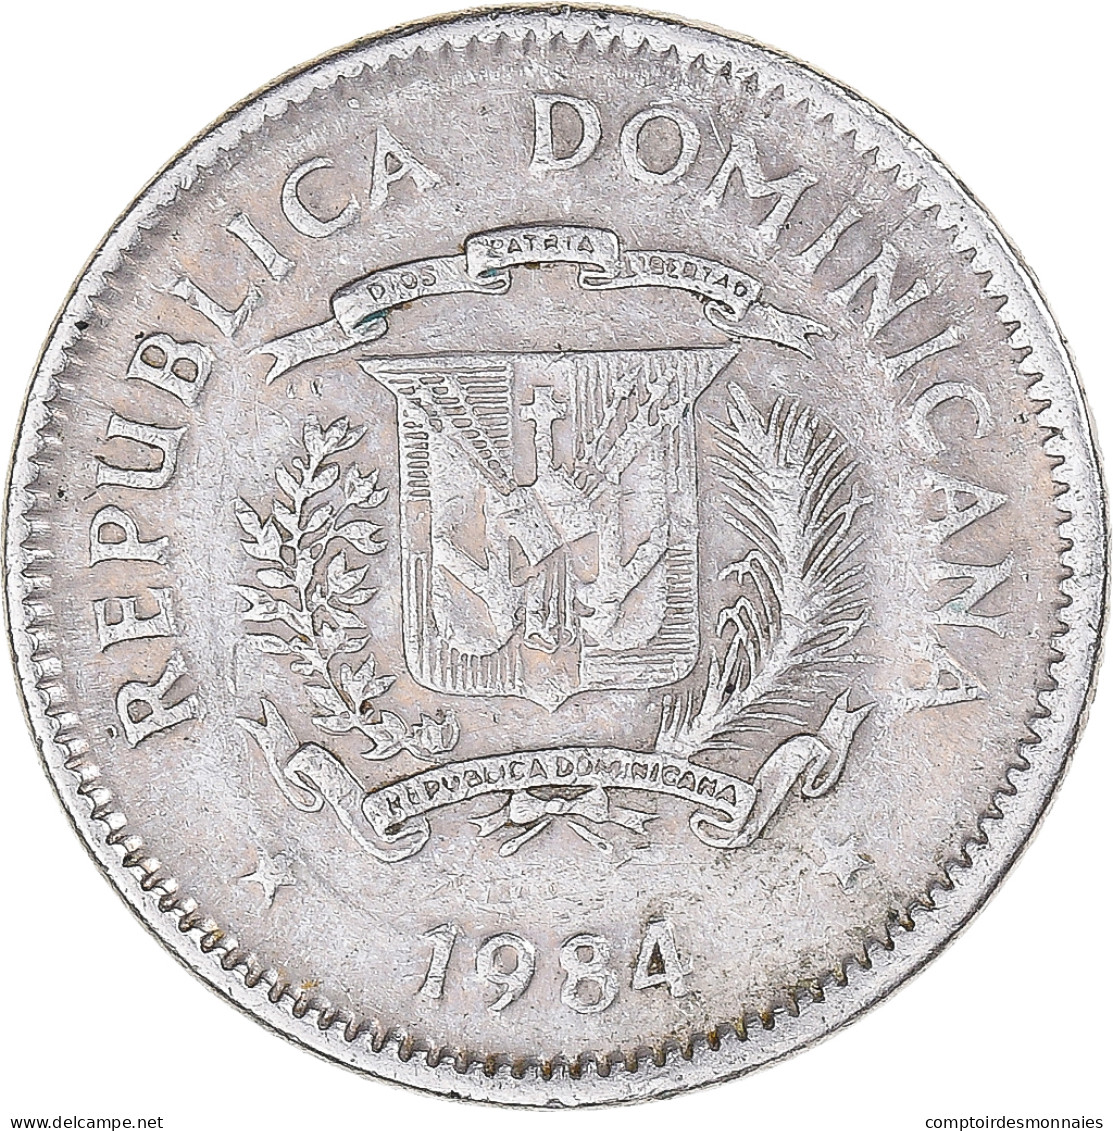 Monnaie, République Dominicaine, 10 Centavos, 1984 - Dominicaine